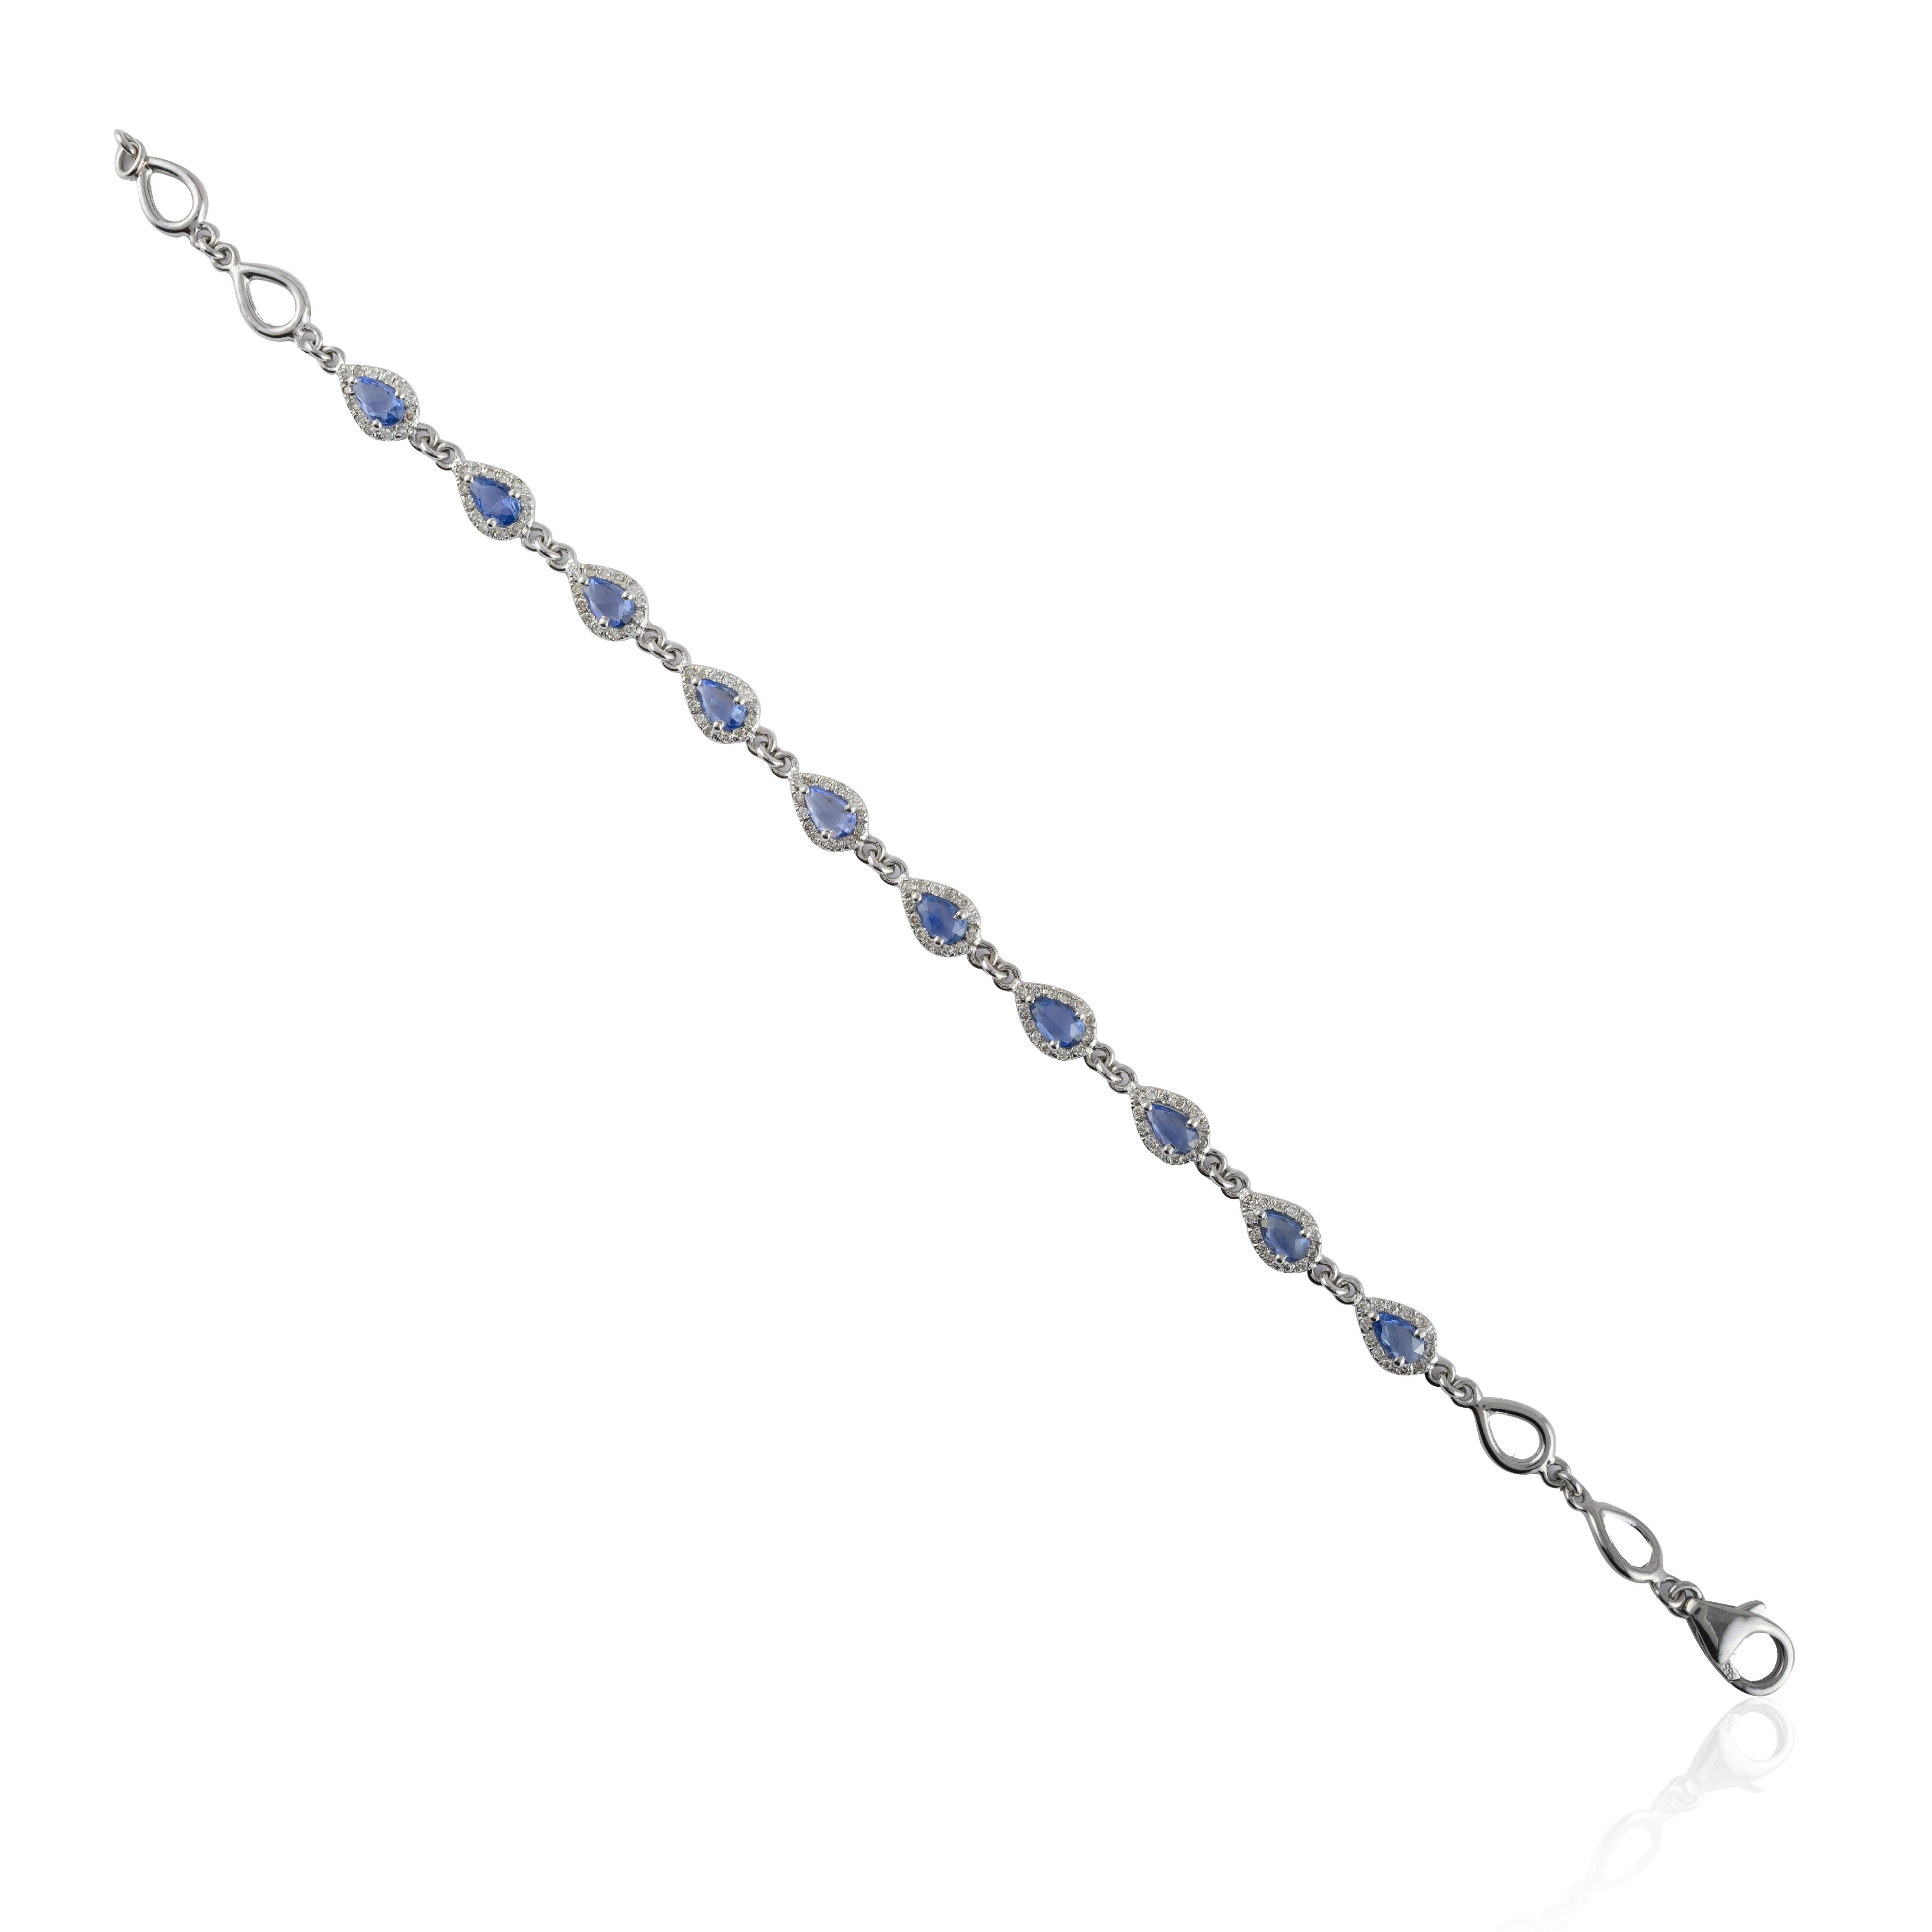 Ce bracelet en saphir et diamant fait main en or 14 carats met en valeur 10 saphirs bleus naturels étincelants à l'infini, d'un poids de 2,06 carats. Il mesure 7 pouces de long. 
Le saphir stimule la concentration et réduit le stress.
Conçue avec un